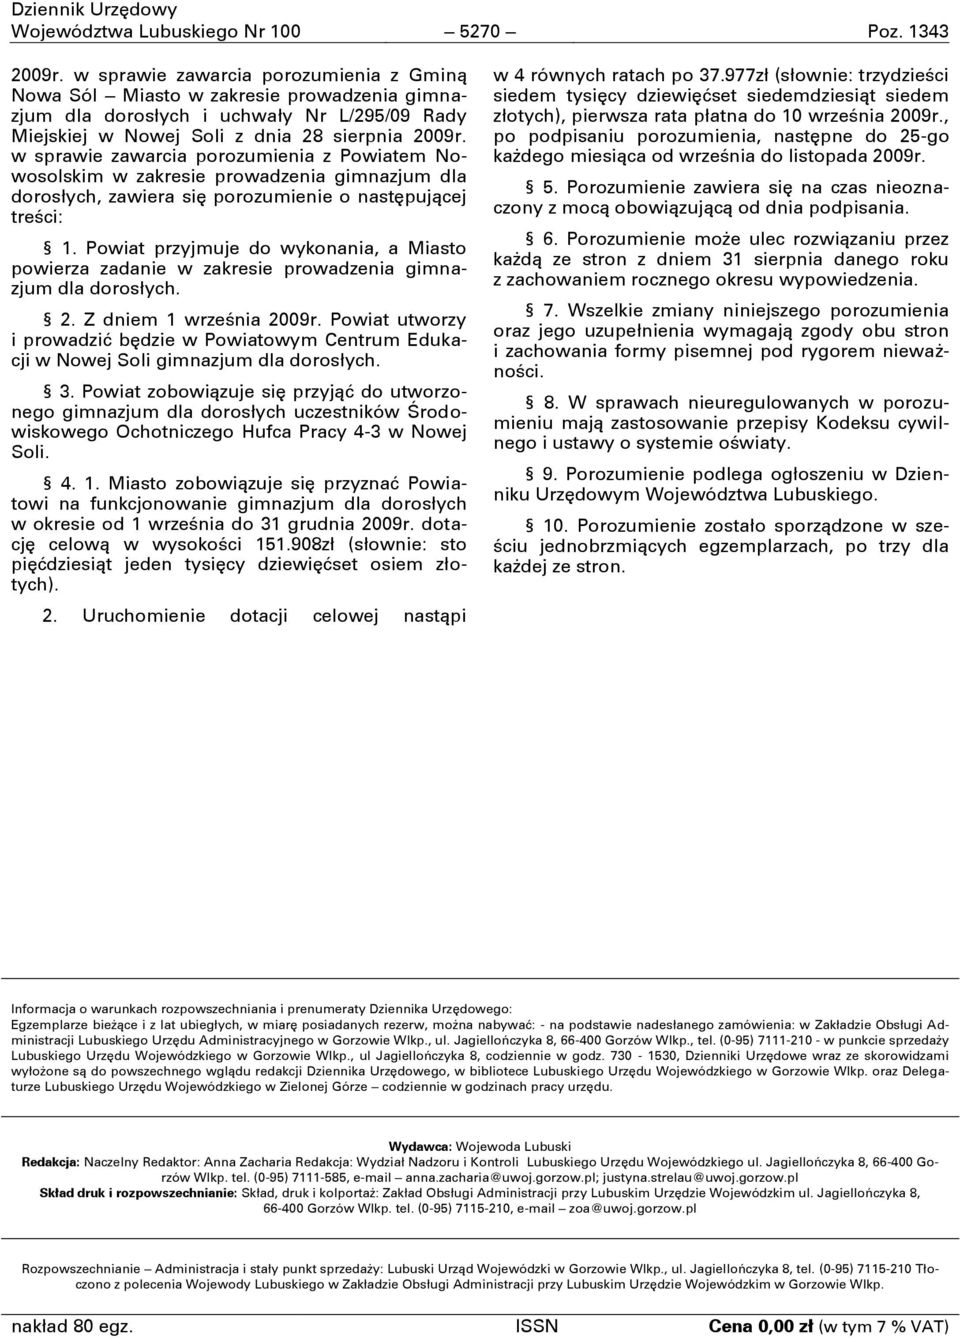 w sprawie zawarcia porozumienia z Powiatem Nowosolskim w zakresie prowadzenia gimnazjum dla dorosłych, zawiera się porozumienie o następującej treści: 1.